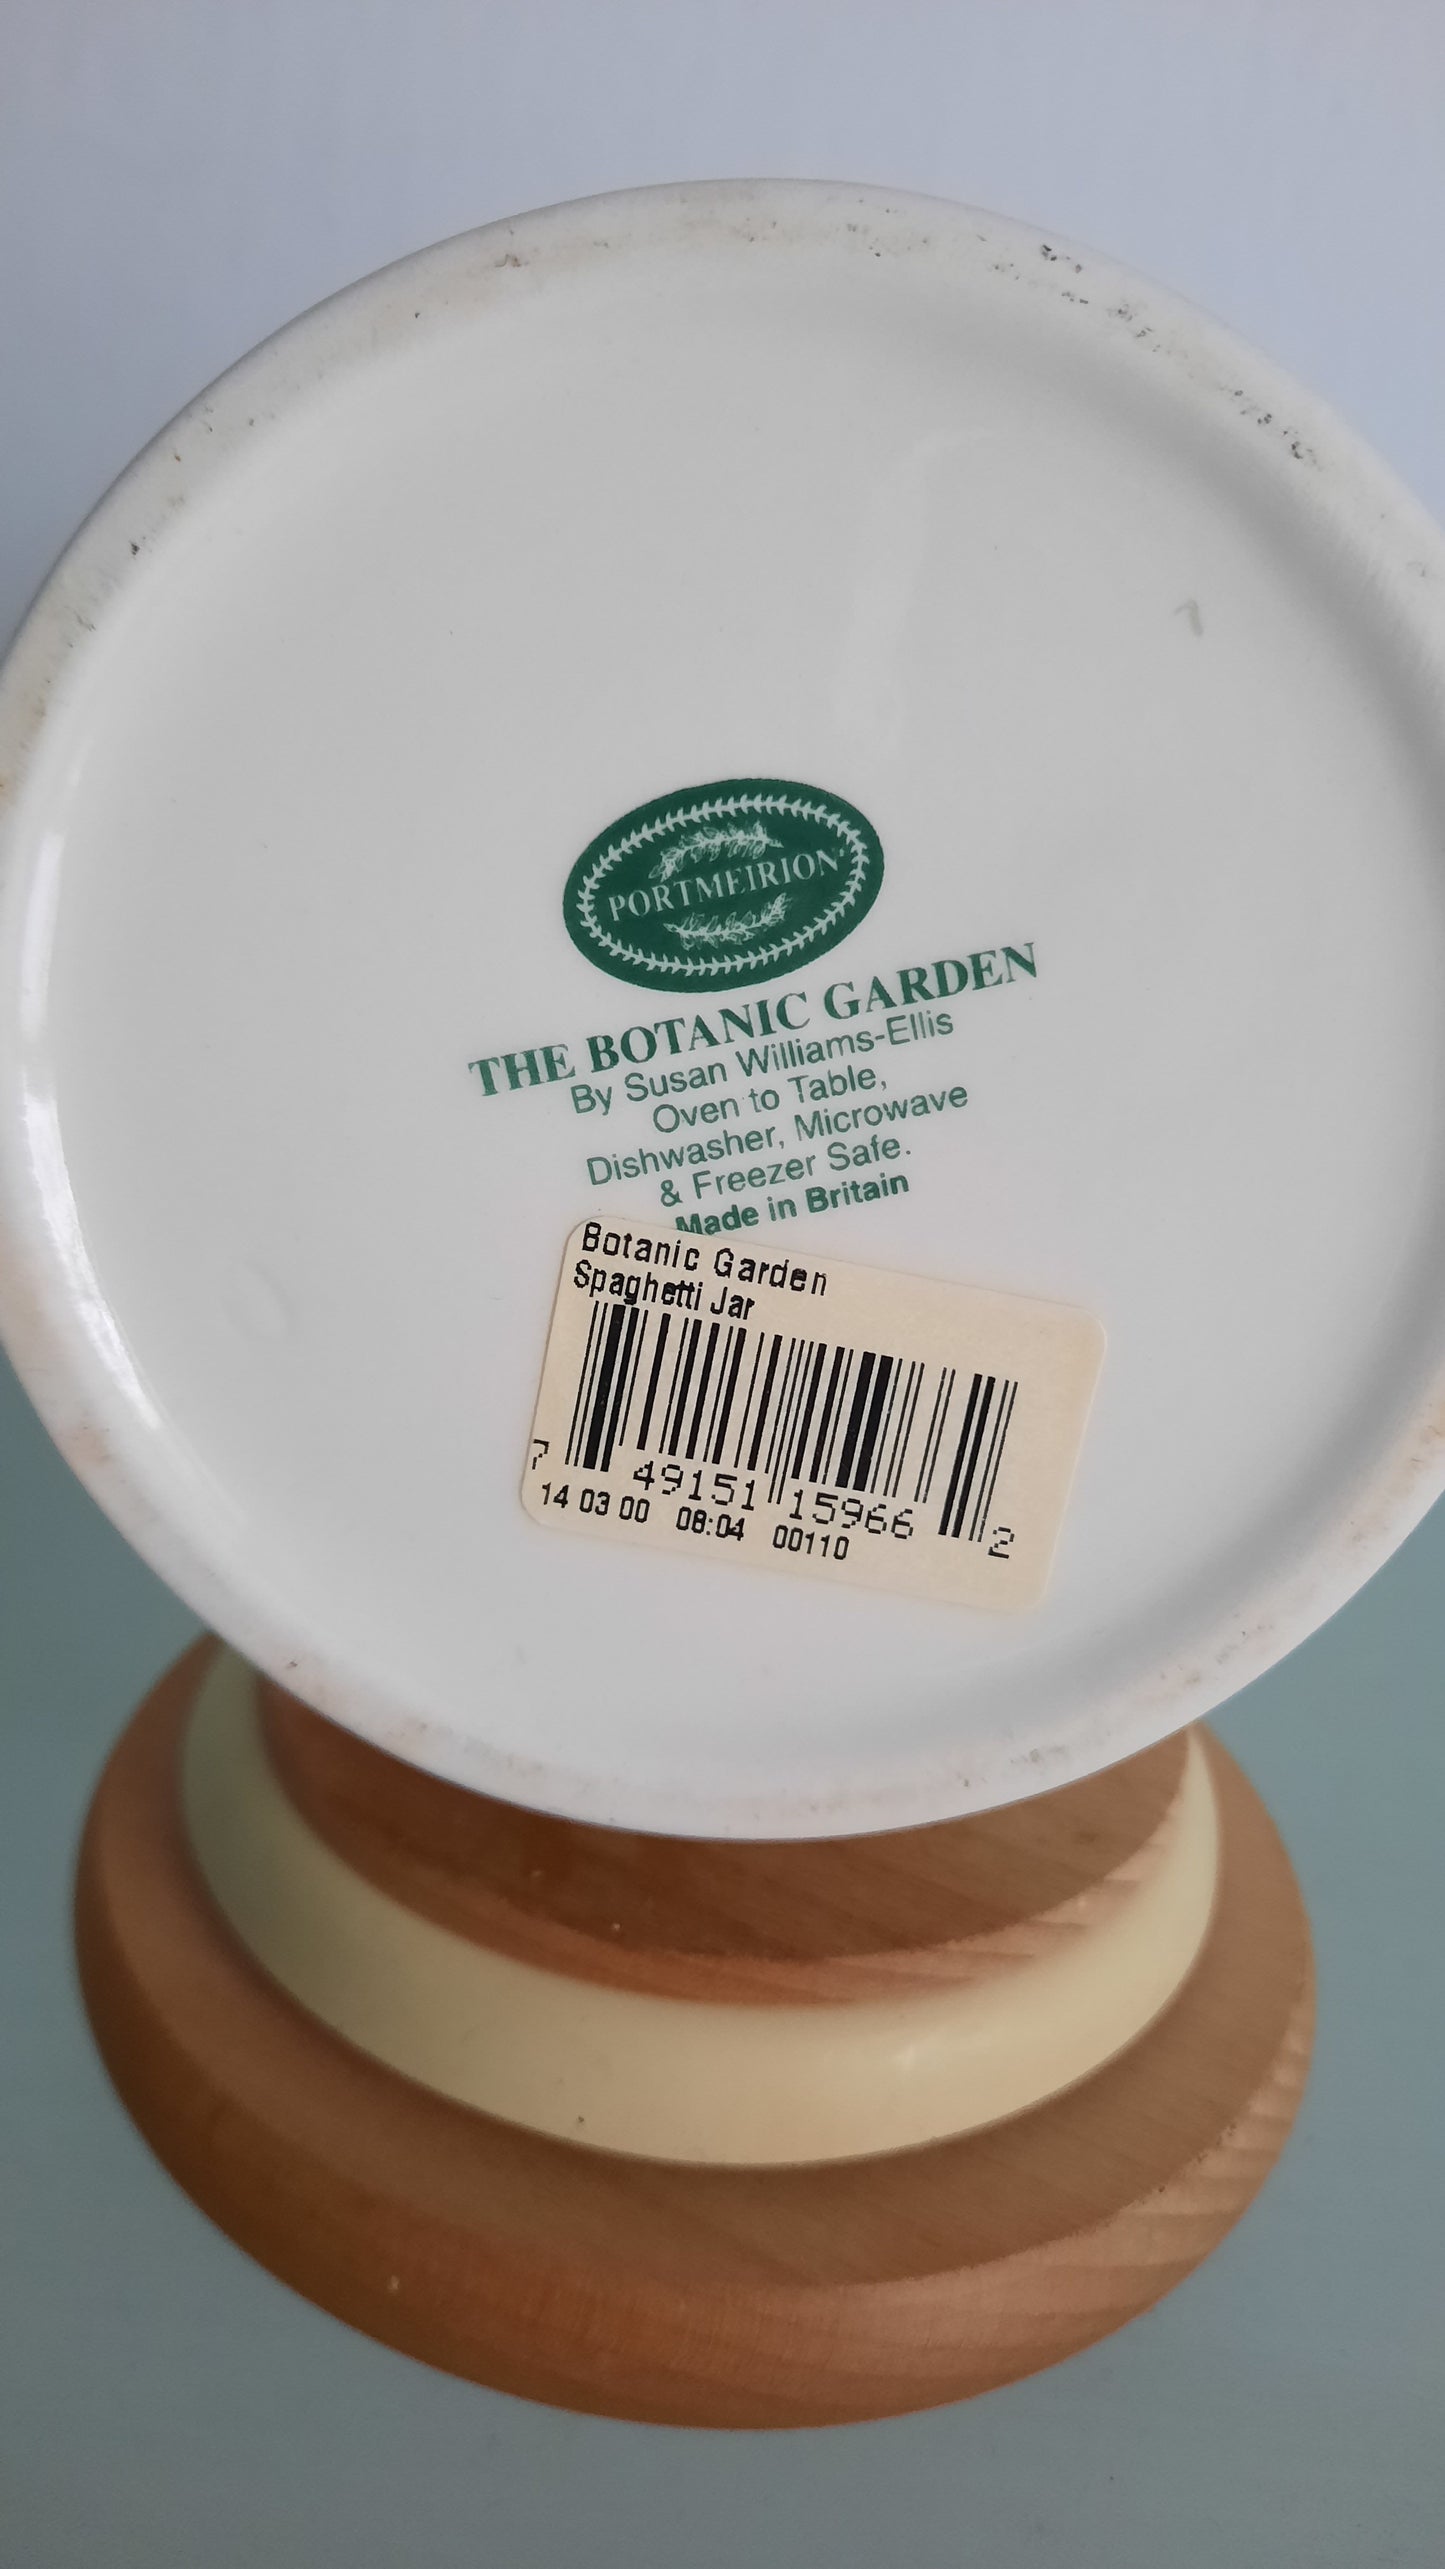 Vintage Portmeirion Pottery Botanic Garden Spaghetti Jar